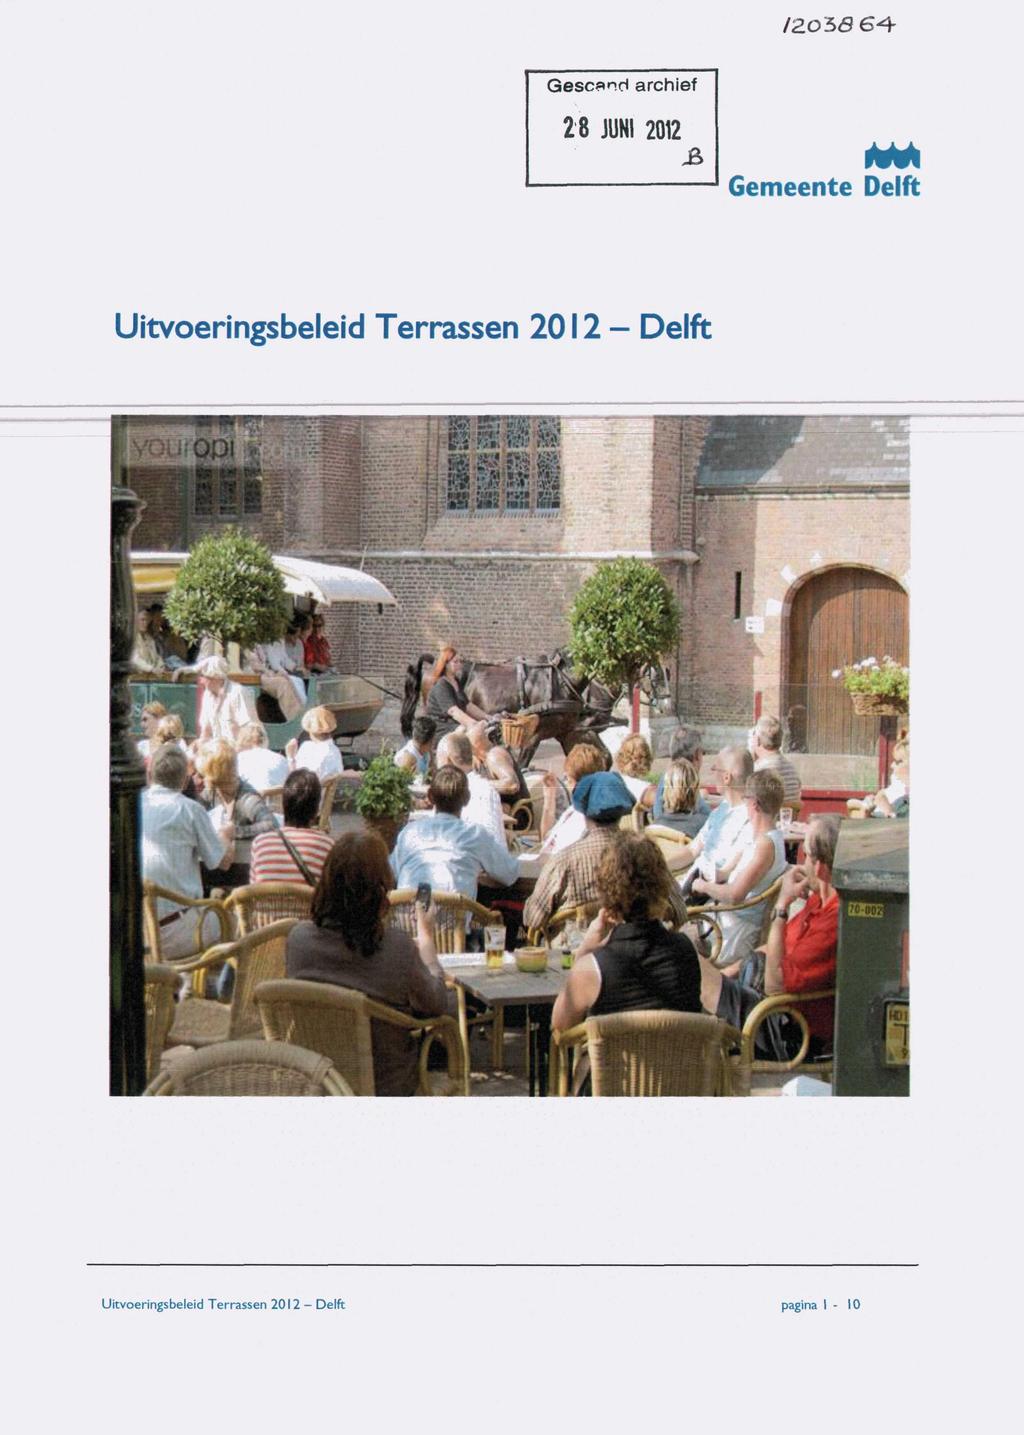 /205Ö 6^- Gescsnd archief 2 8 JUNI 2012 Gemeente Delft Uitvoeringsbeleid